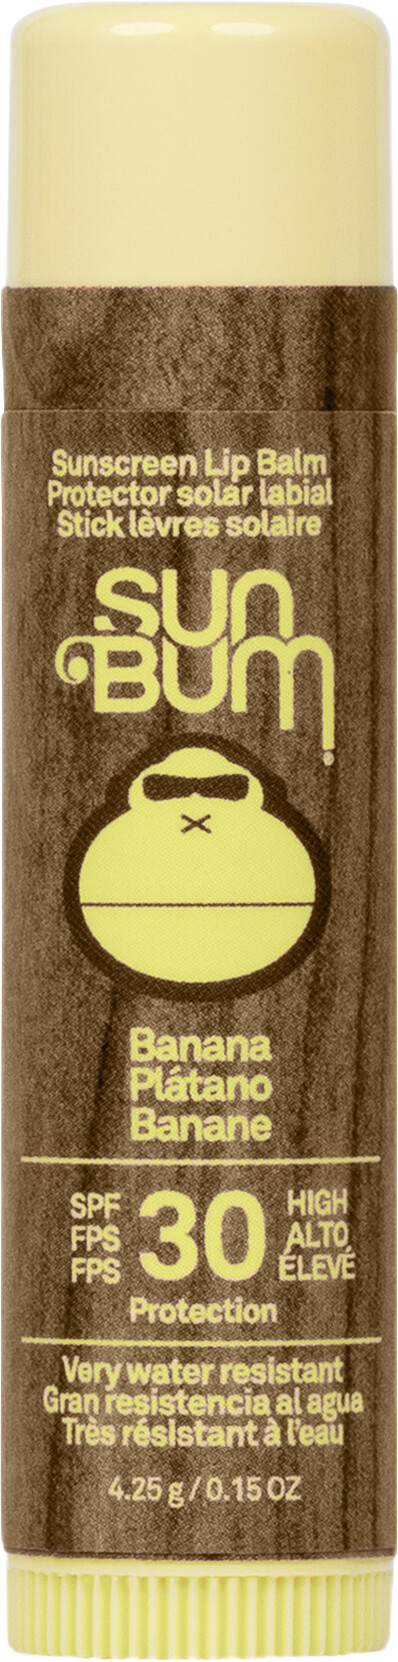 Sun Bum Original Lip Balm SPF30 4.25g Banana